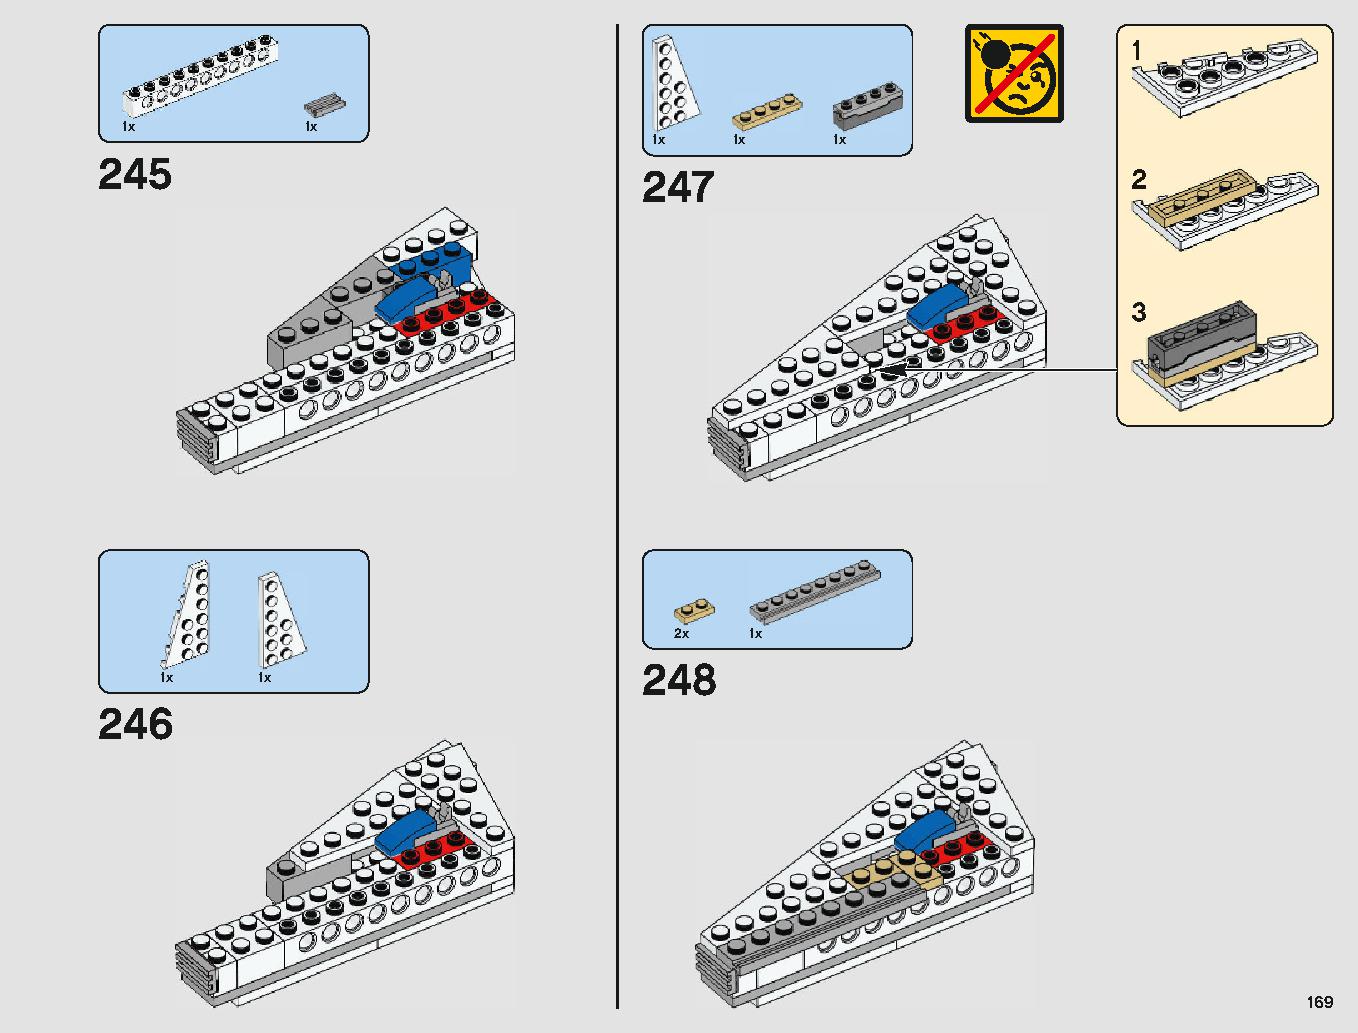 ミレニアム・ファルコン 75212 レゴの商品情報 レゴの説明書・組立方法 169 page